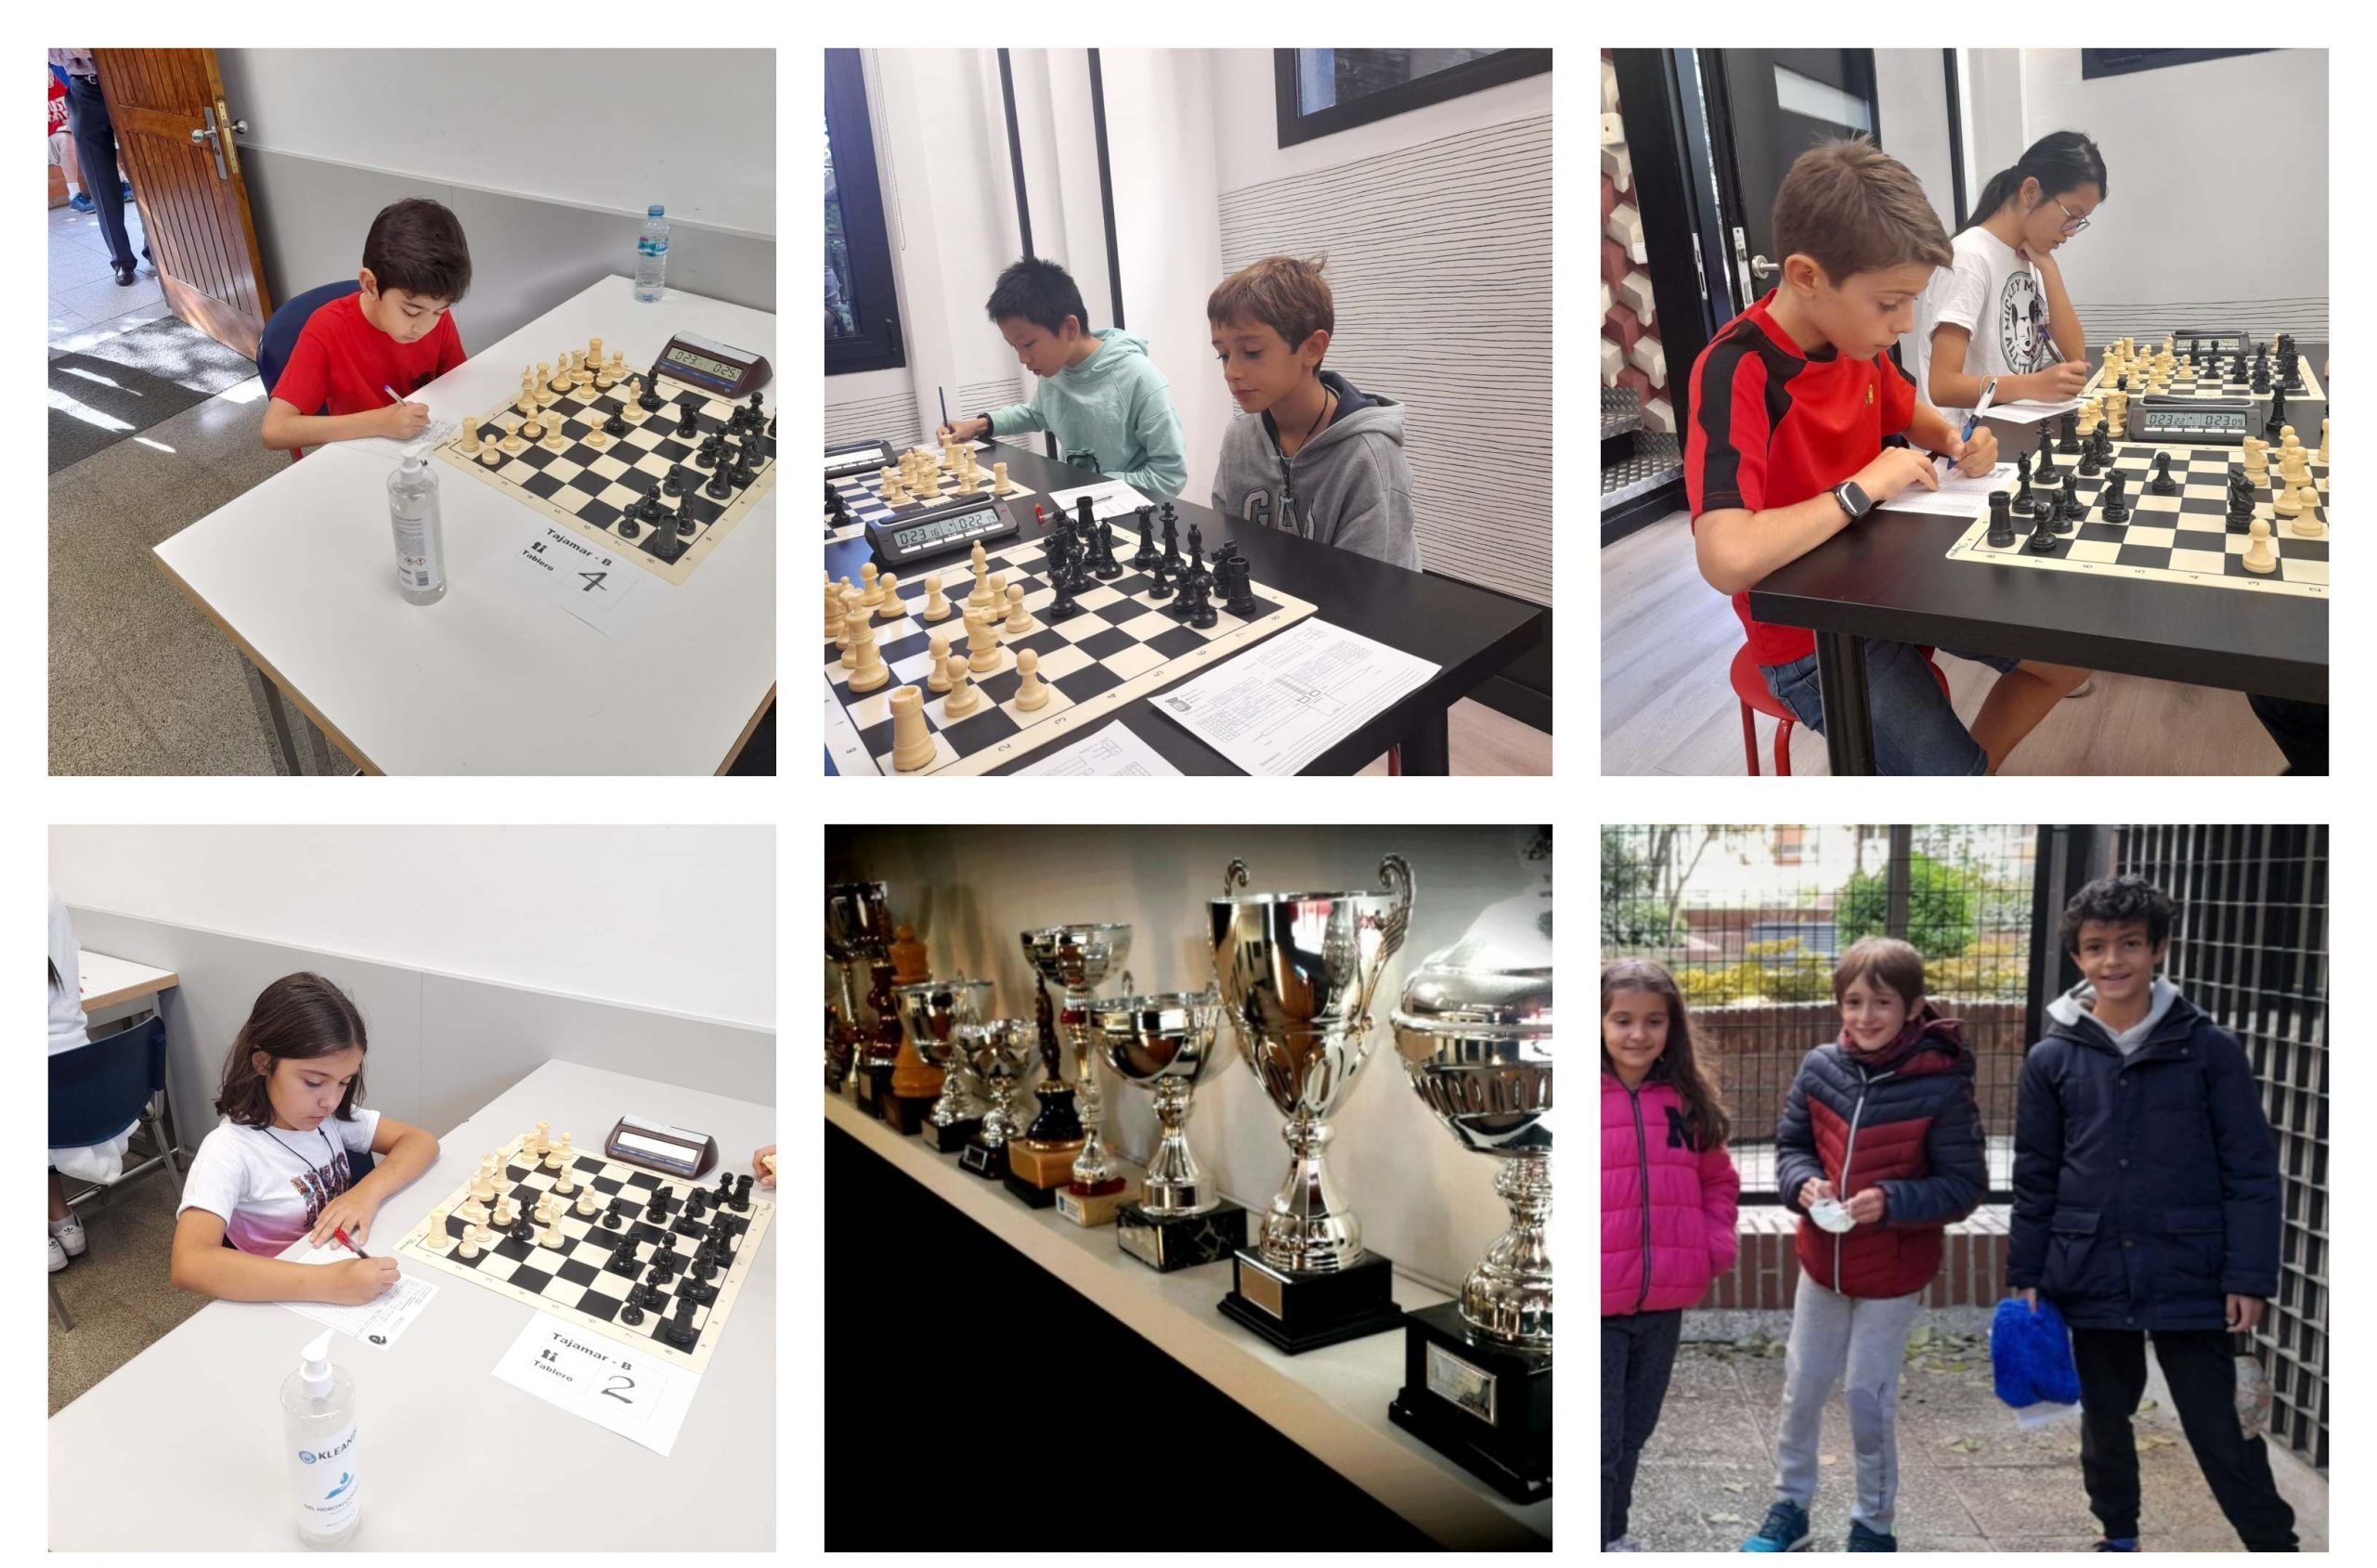 Campeones de ajedrez en categoría alevín. Escuela de ajedrez blanco y negro.